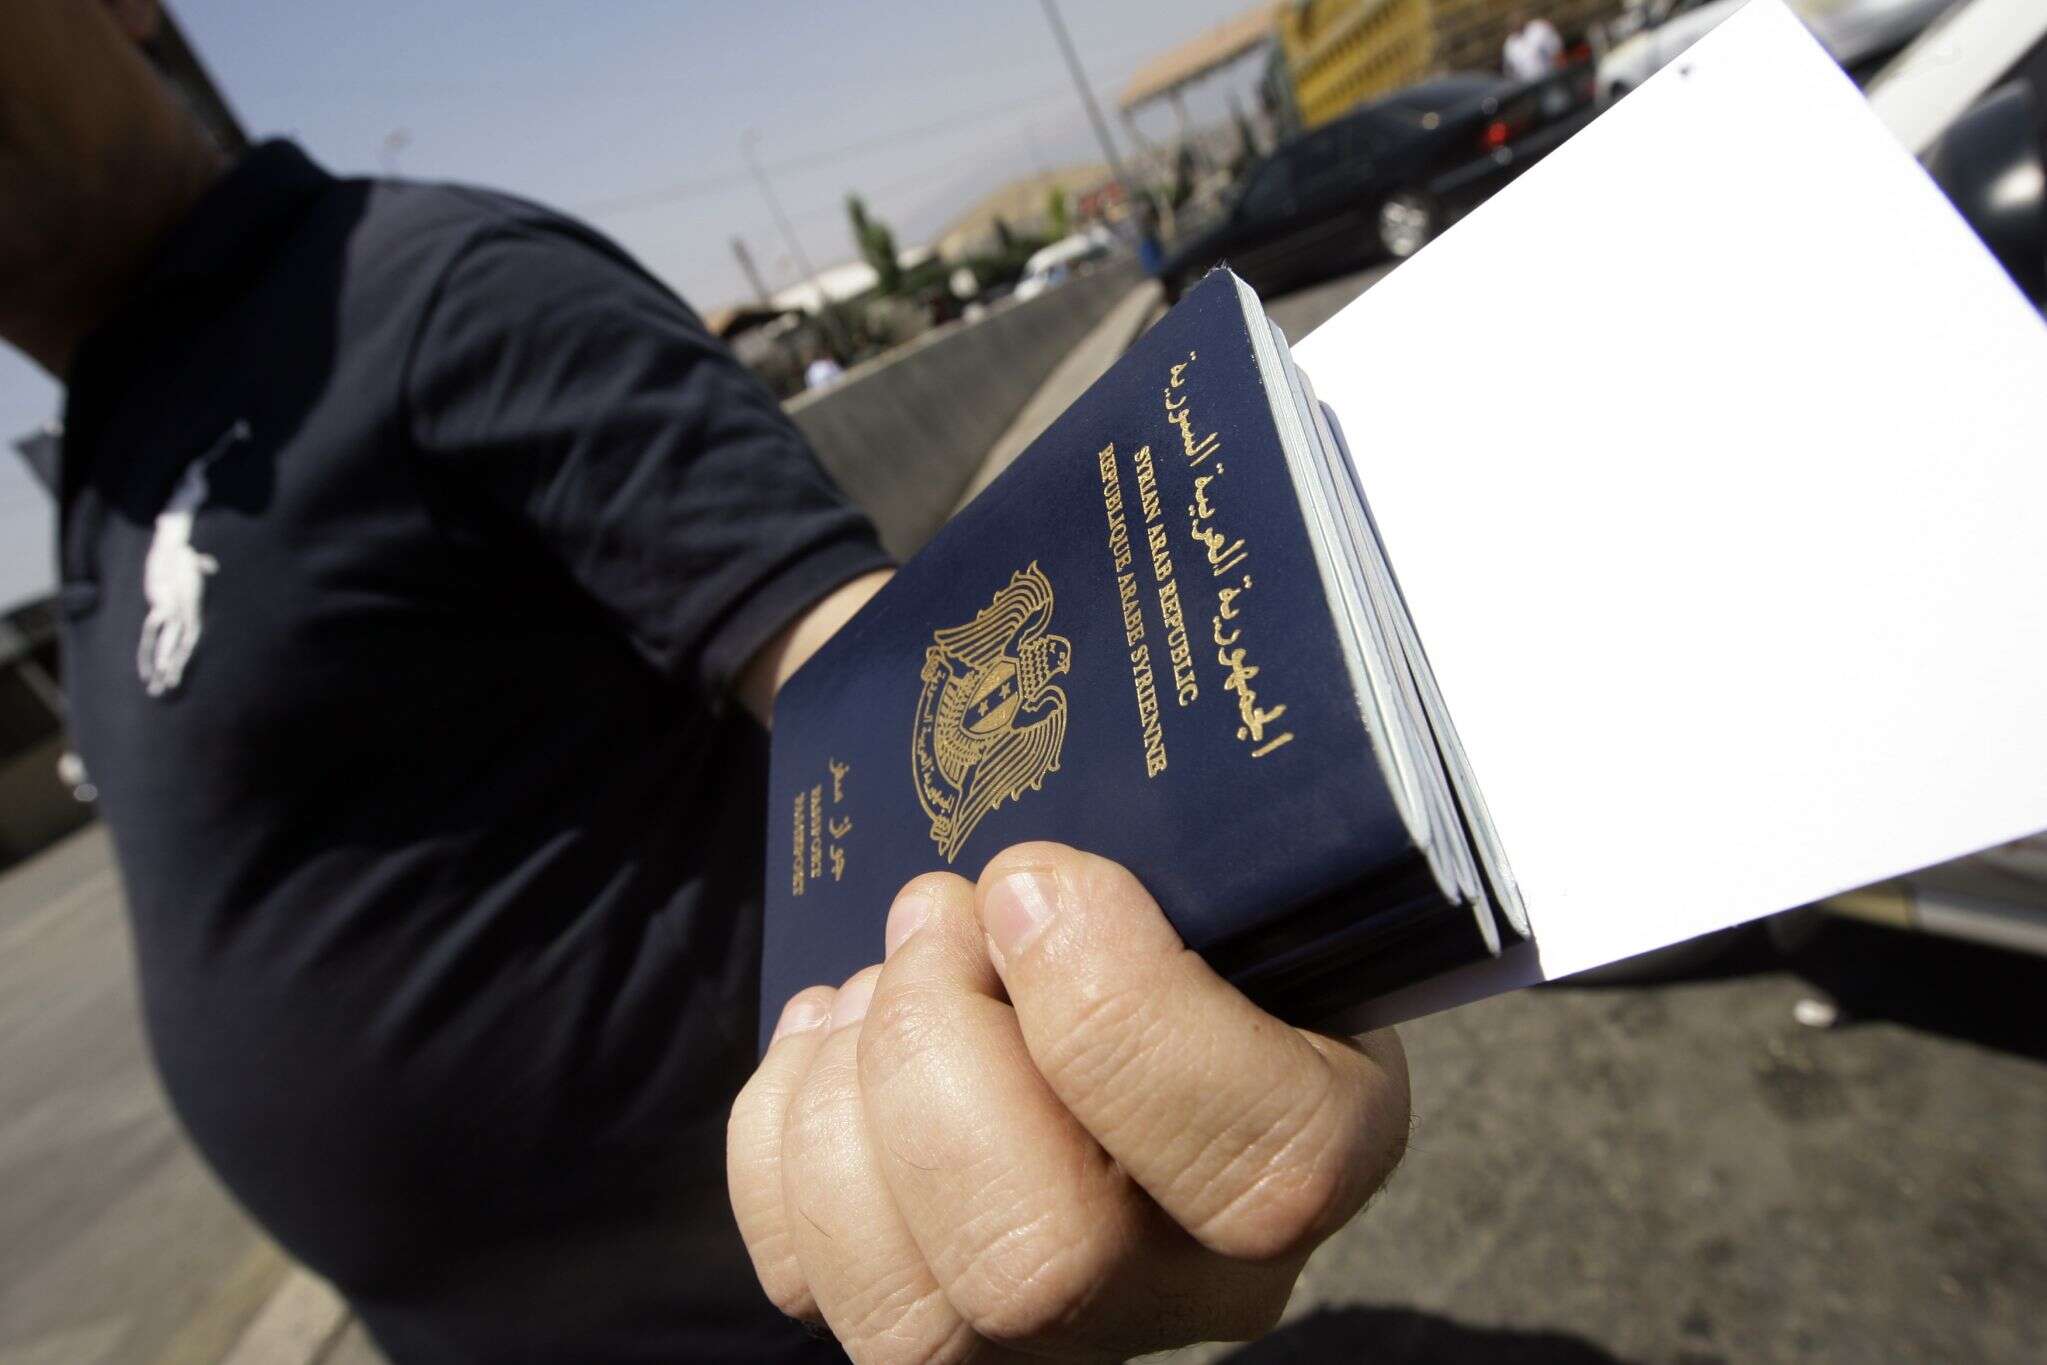 شخص يحمل مجموعة جوازات سفر - شروط دخول السوريين إلى لبنان